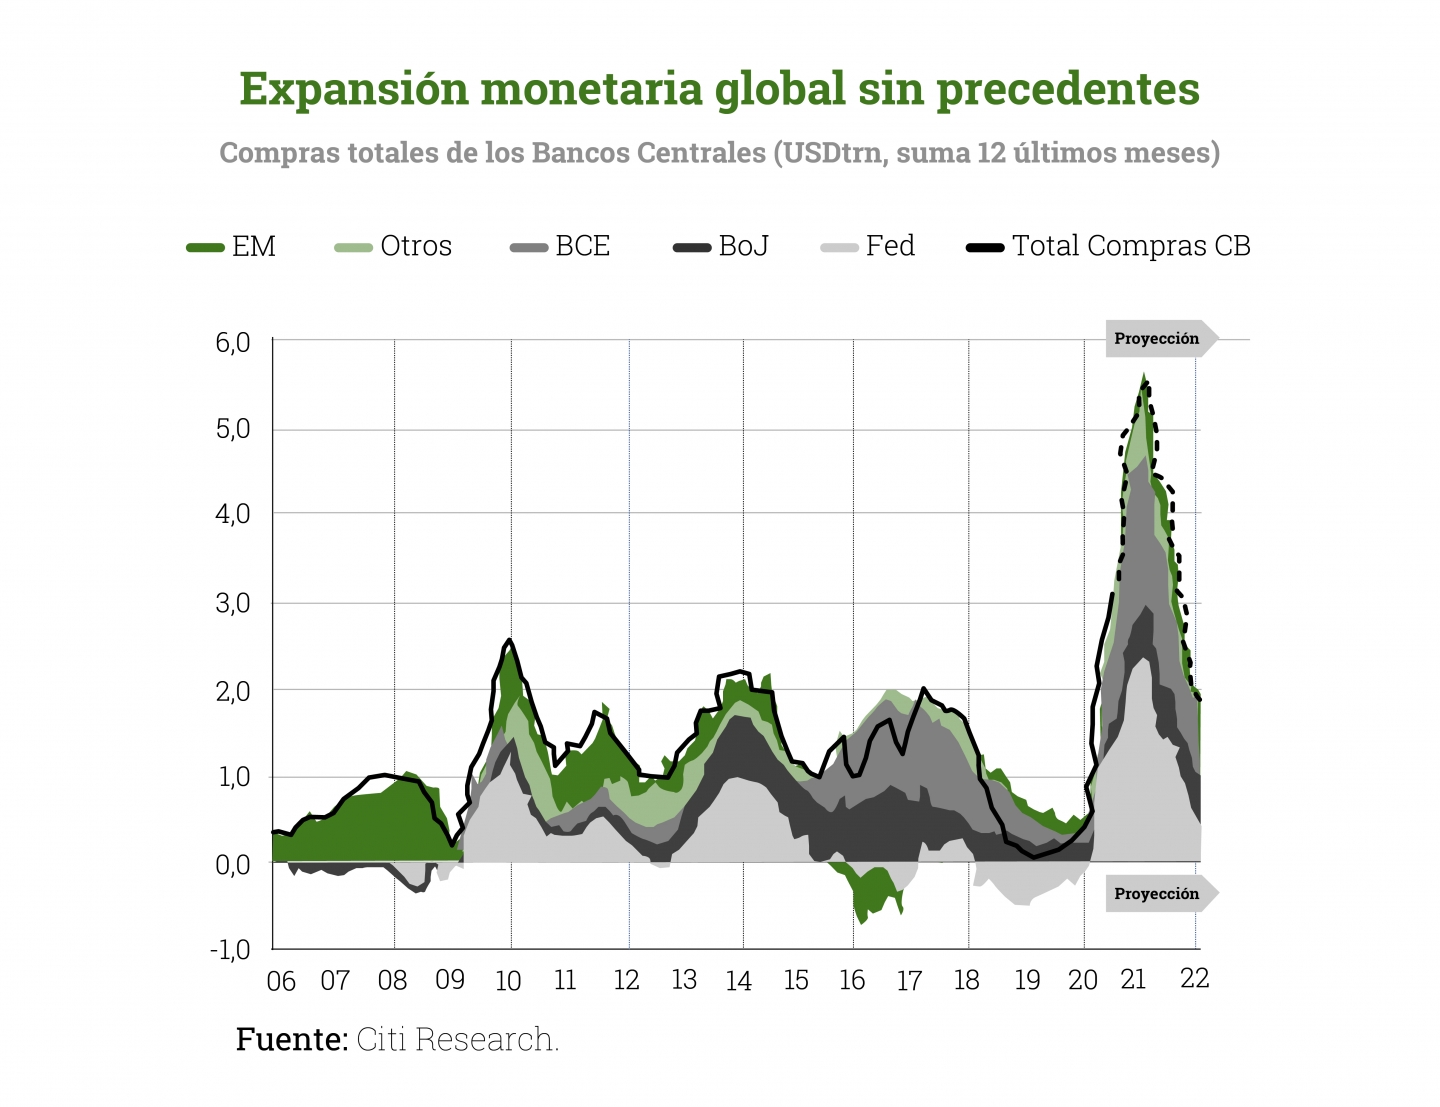 INFLACION-expansion-monetaria-global-precedentes